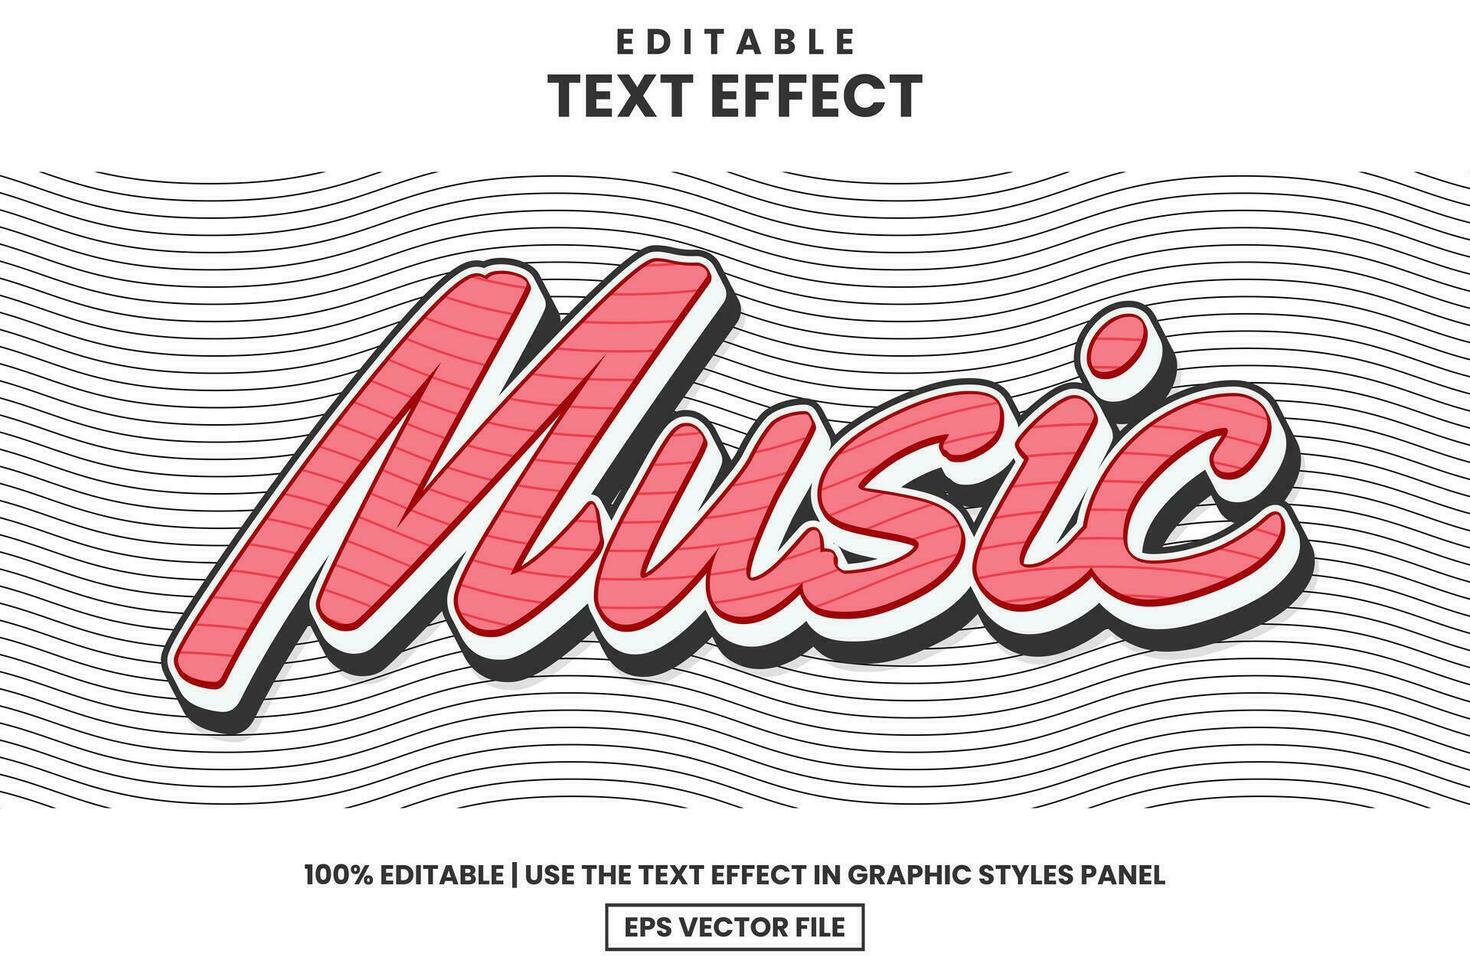 música 3d dibujos animados editable texto efecto modelo moderno estilo, vector ilustración